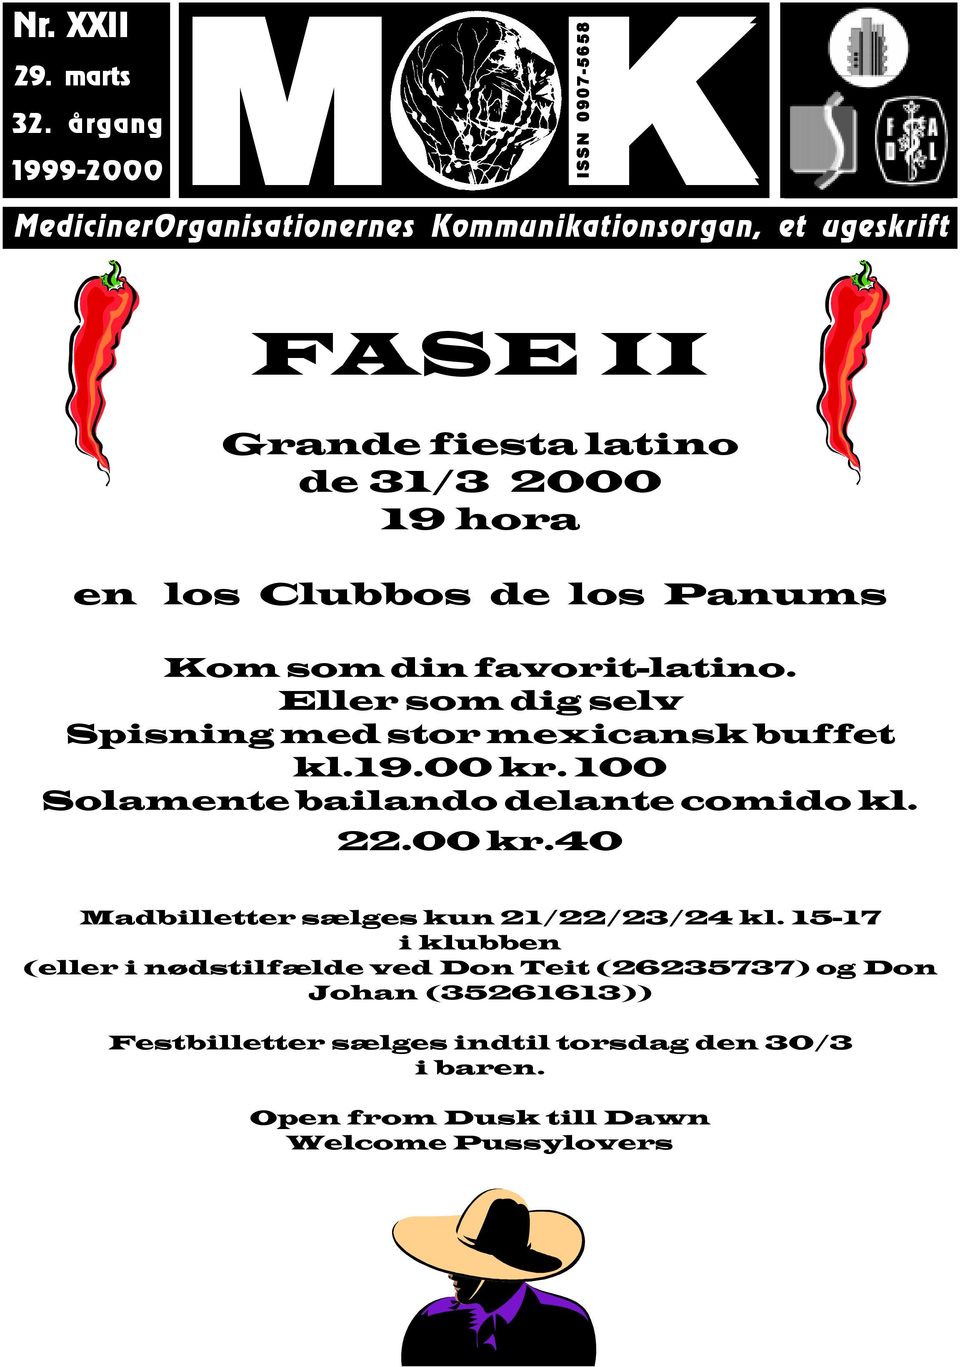 2000 19 hora en los Clubbos de los Panums Kom som din favorit-latino. Eller som dig selv Spisning med stor mexicansk buffet kl.19.00 kr.